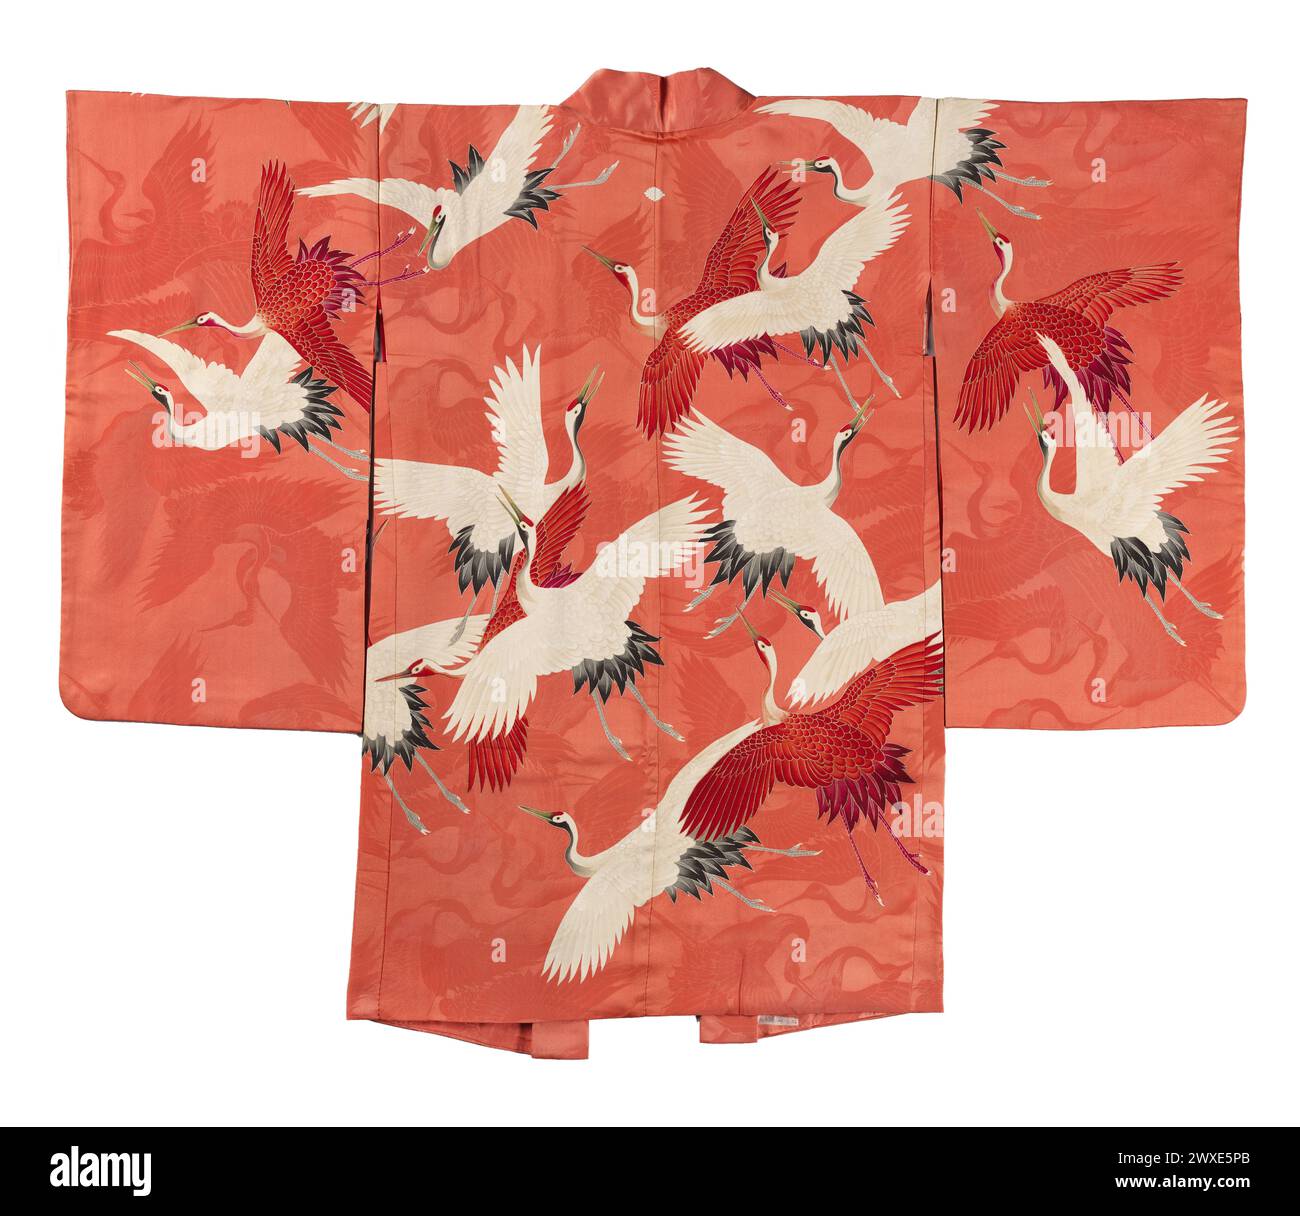 Japanischer Furisode-Kimono mit einer Myriade von fliegenden Kranichen, anonym, 1910 - 1930 formeller langärmliger Kimono für eine unverheiratete junge Frau (Furisode), verziert mit fliegenden Kranichen. Japanische Seide Stockfoto